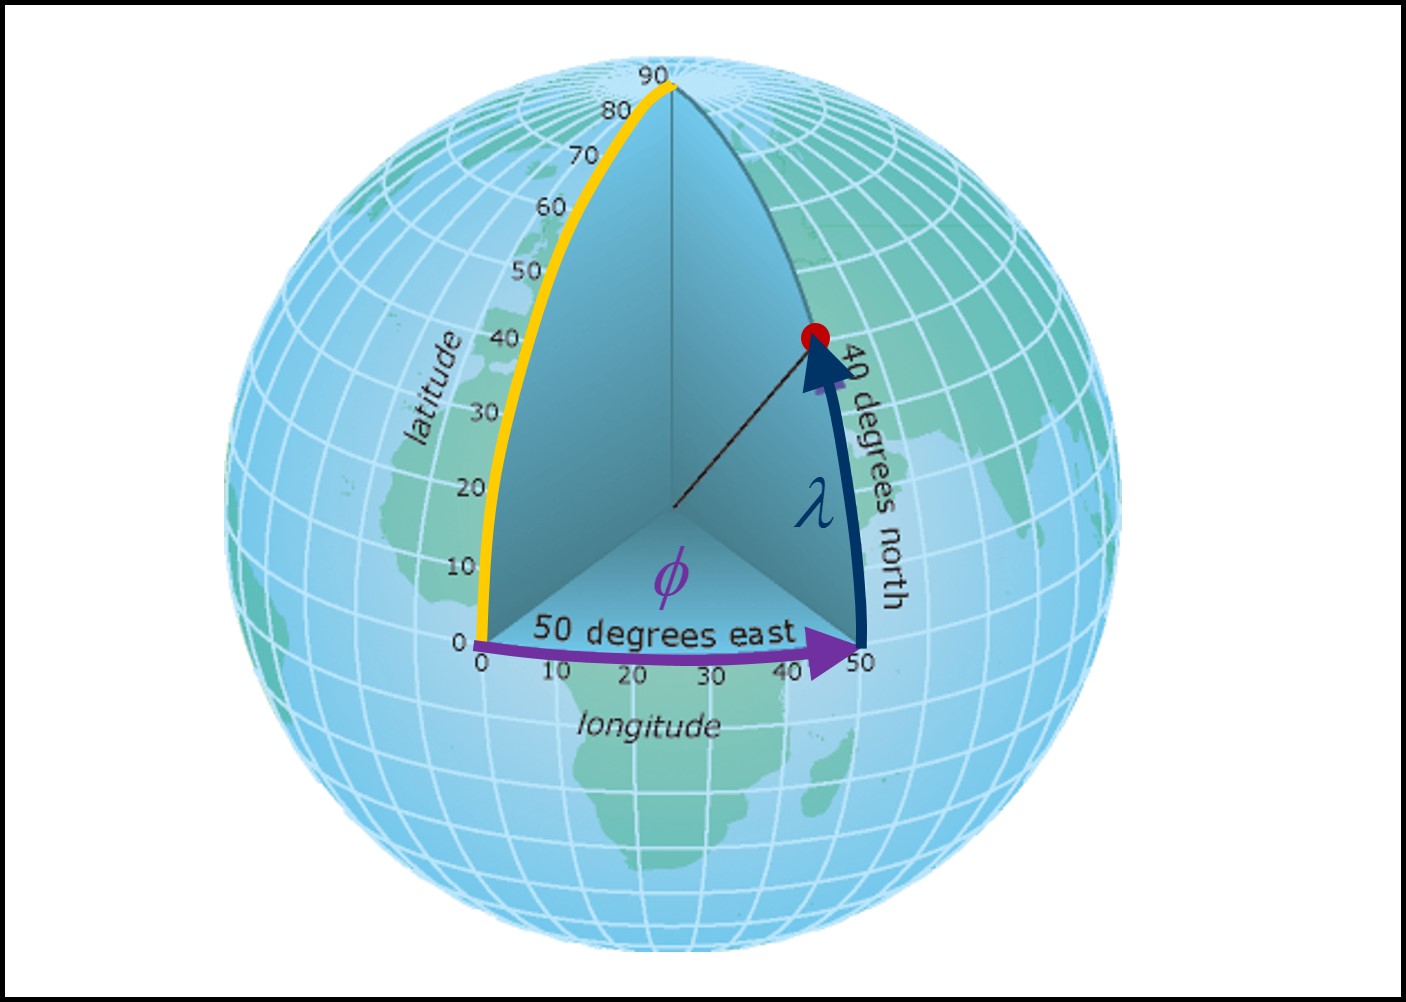 Le système de coordonnées géographiques. Les points à la surface de la Terre sont définis par les coordonnées sphériques ($\phi$,$\lambda$) associées à la longitude (ligne mauve) et à la latitude (ligne bleue foncée) respectivement. Le point rouge possède les coordonnées ($\phi$,$\lambda$) = (50$^{\circ}$ E, 40$^{\circ}$ N). La ligne jaune représente le méridien principal. Source : Esri, image récupérée à https://desktop.arcgis.com/fr/arcmap/10.3/guide-books/map-projections/geographic-coordinate-system.htm